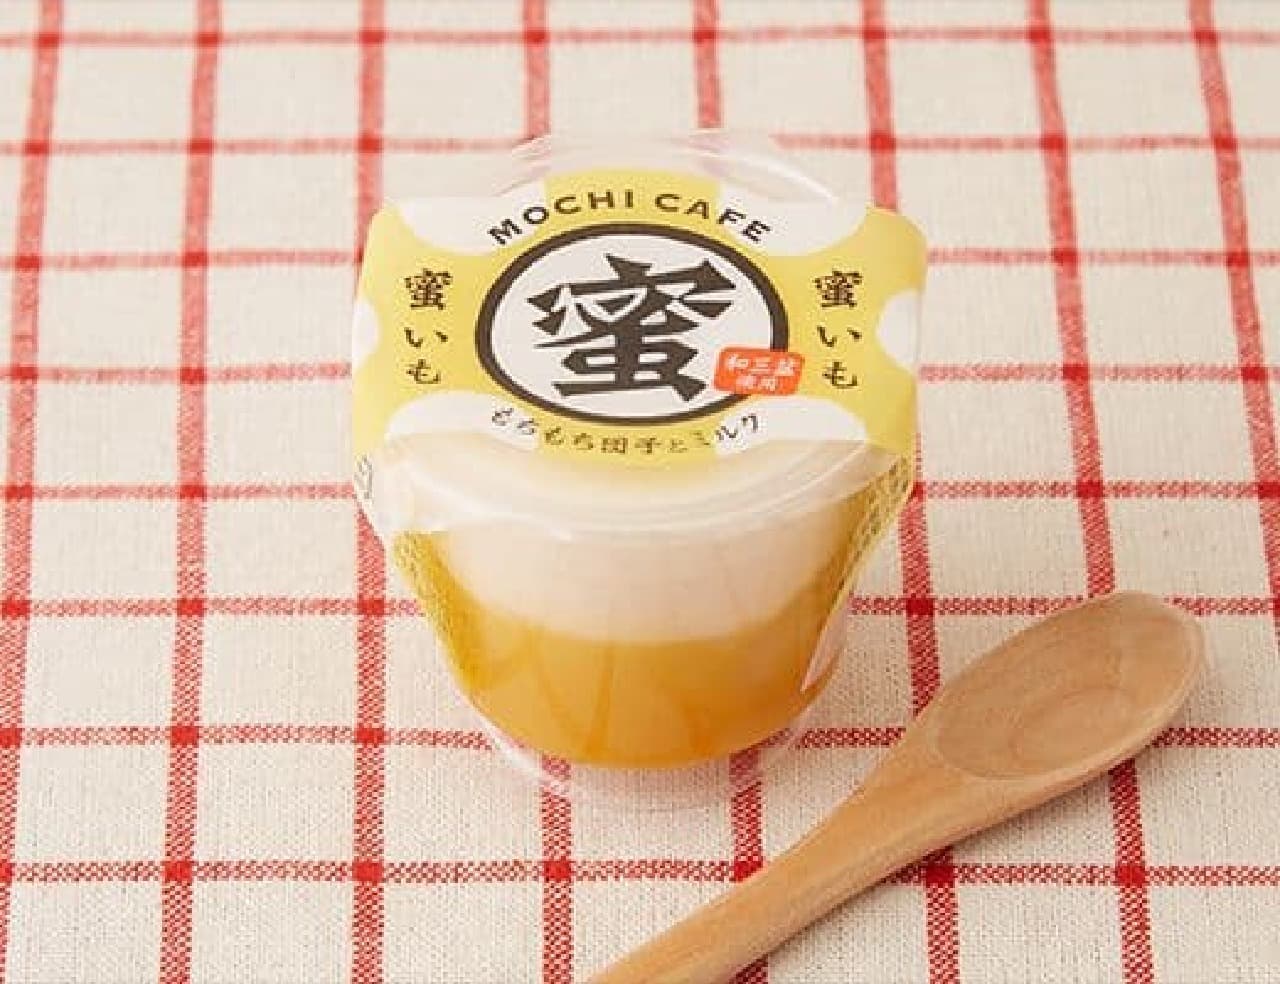 Tokushima Sangyo Mochi Cafe Honey potato 120g